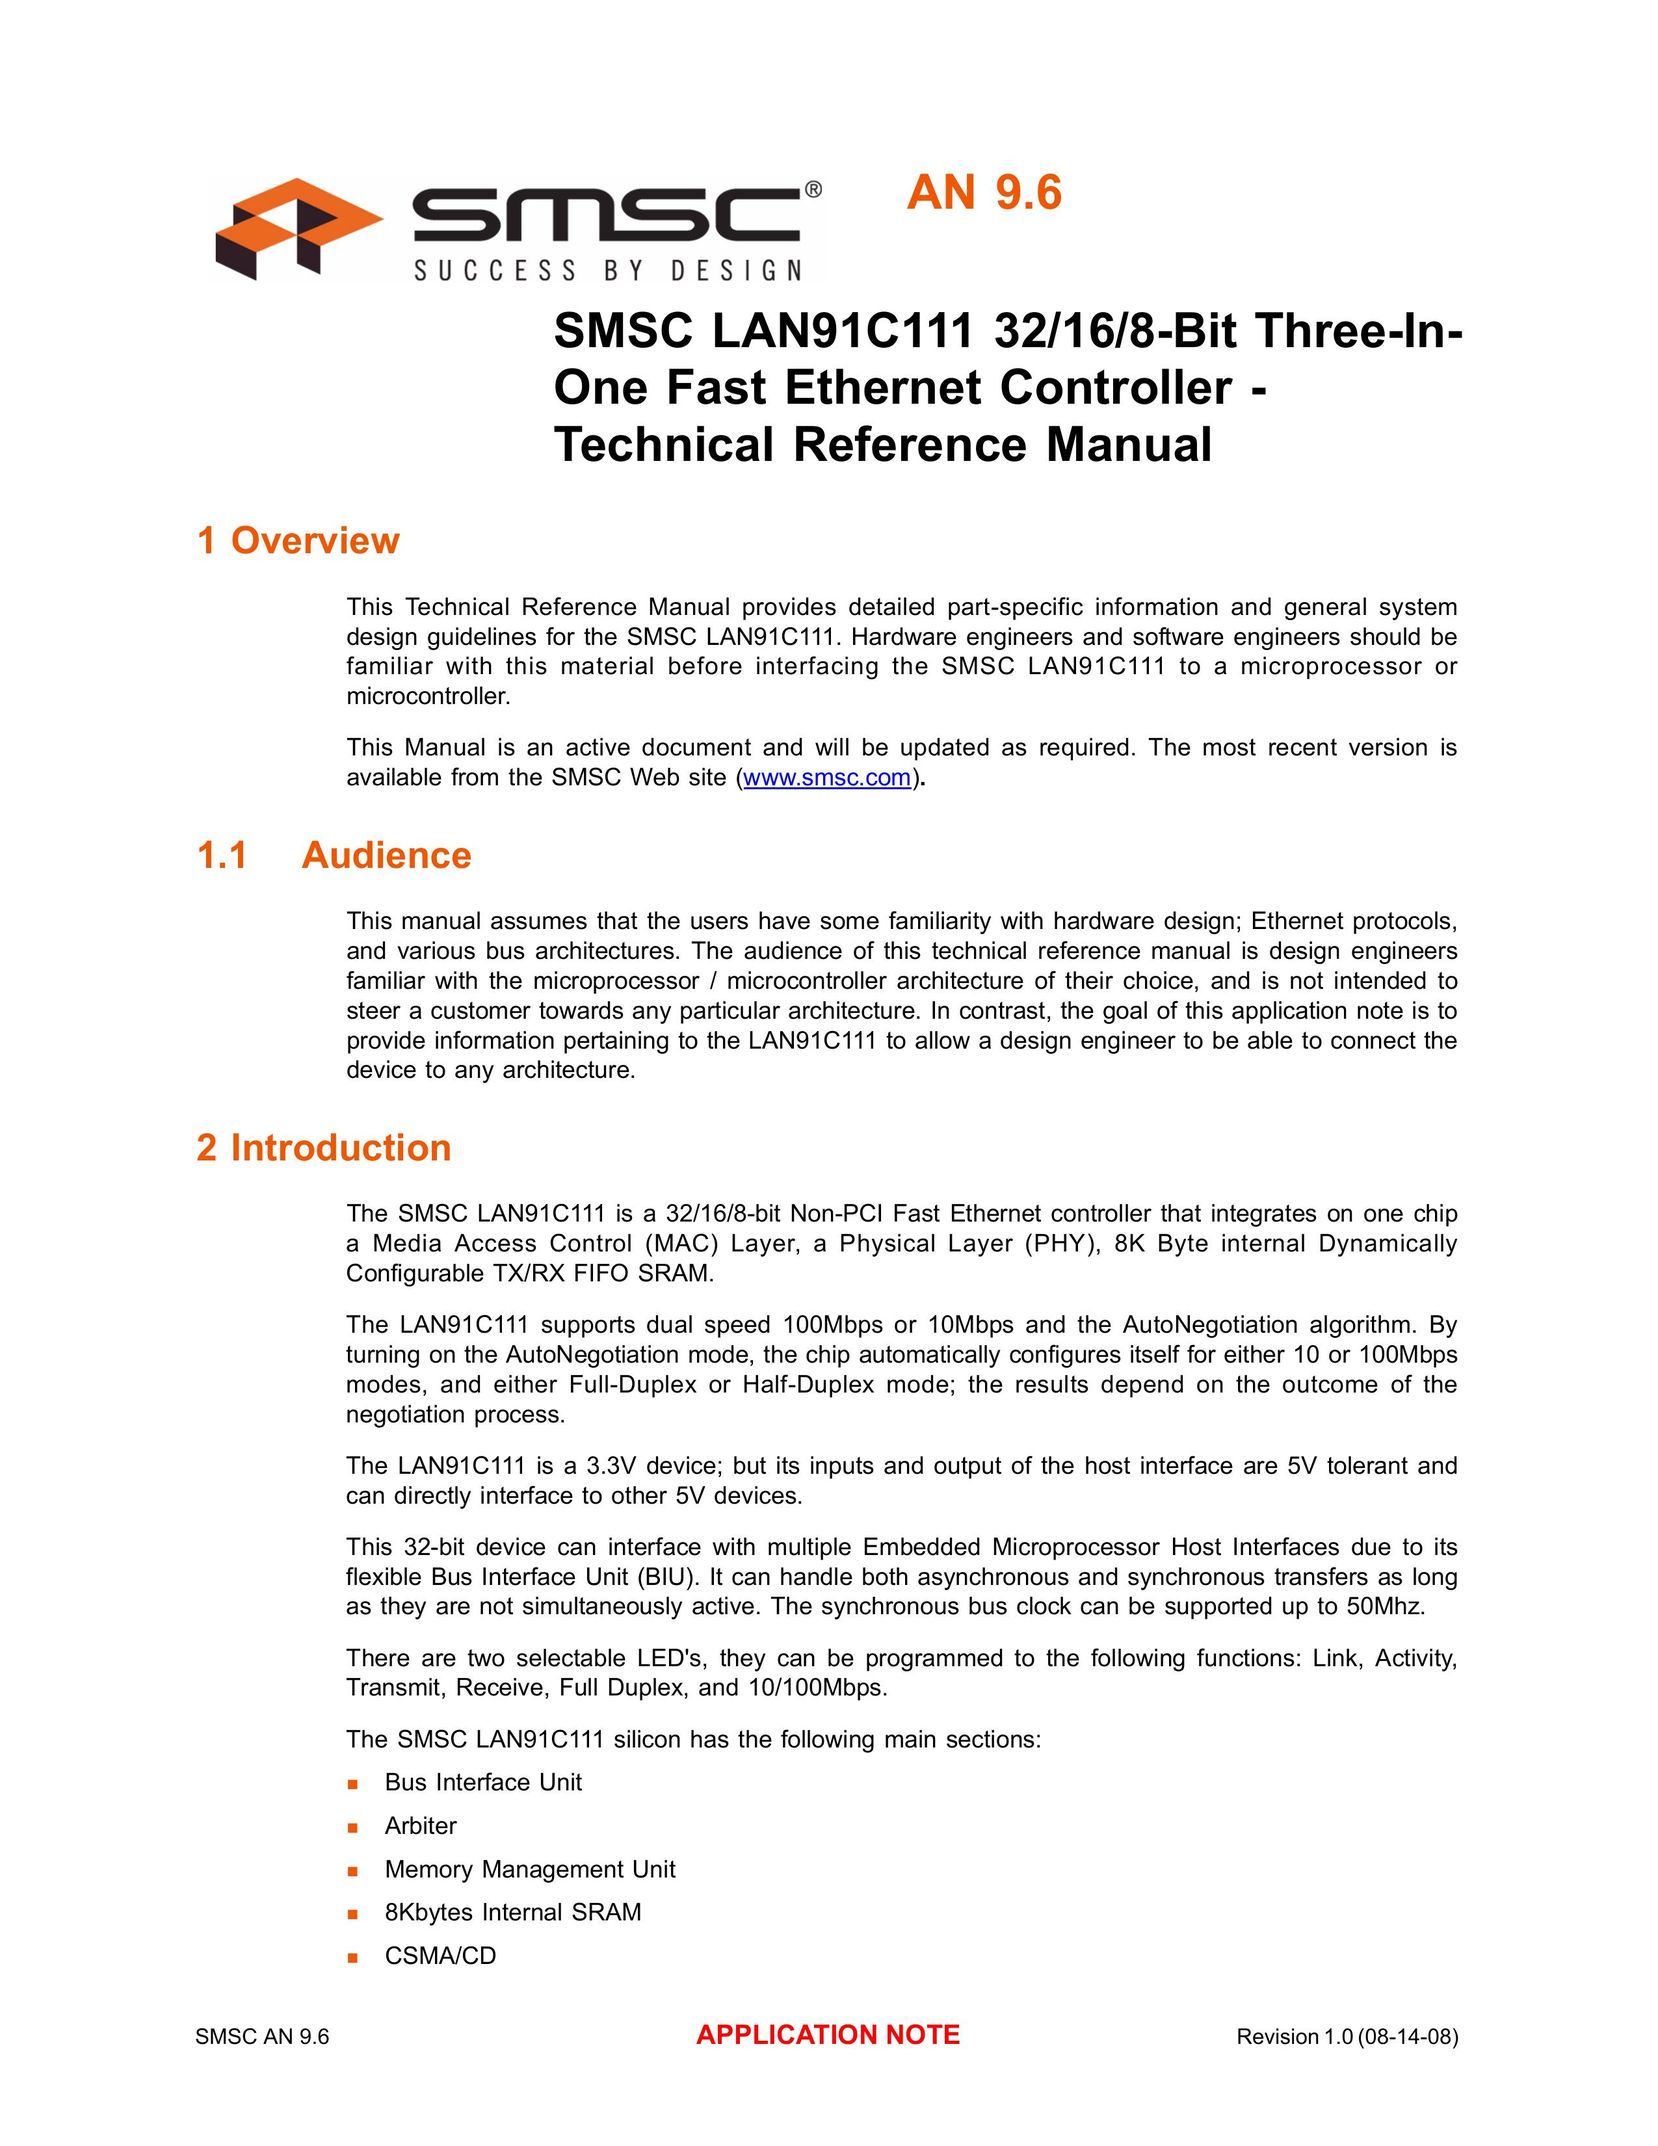 SMSC LAN91C111 Switch User Manual